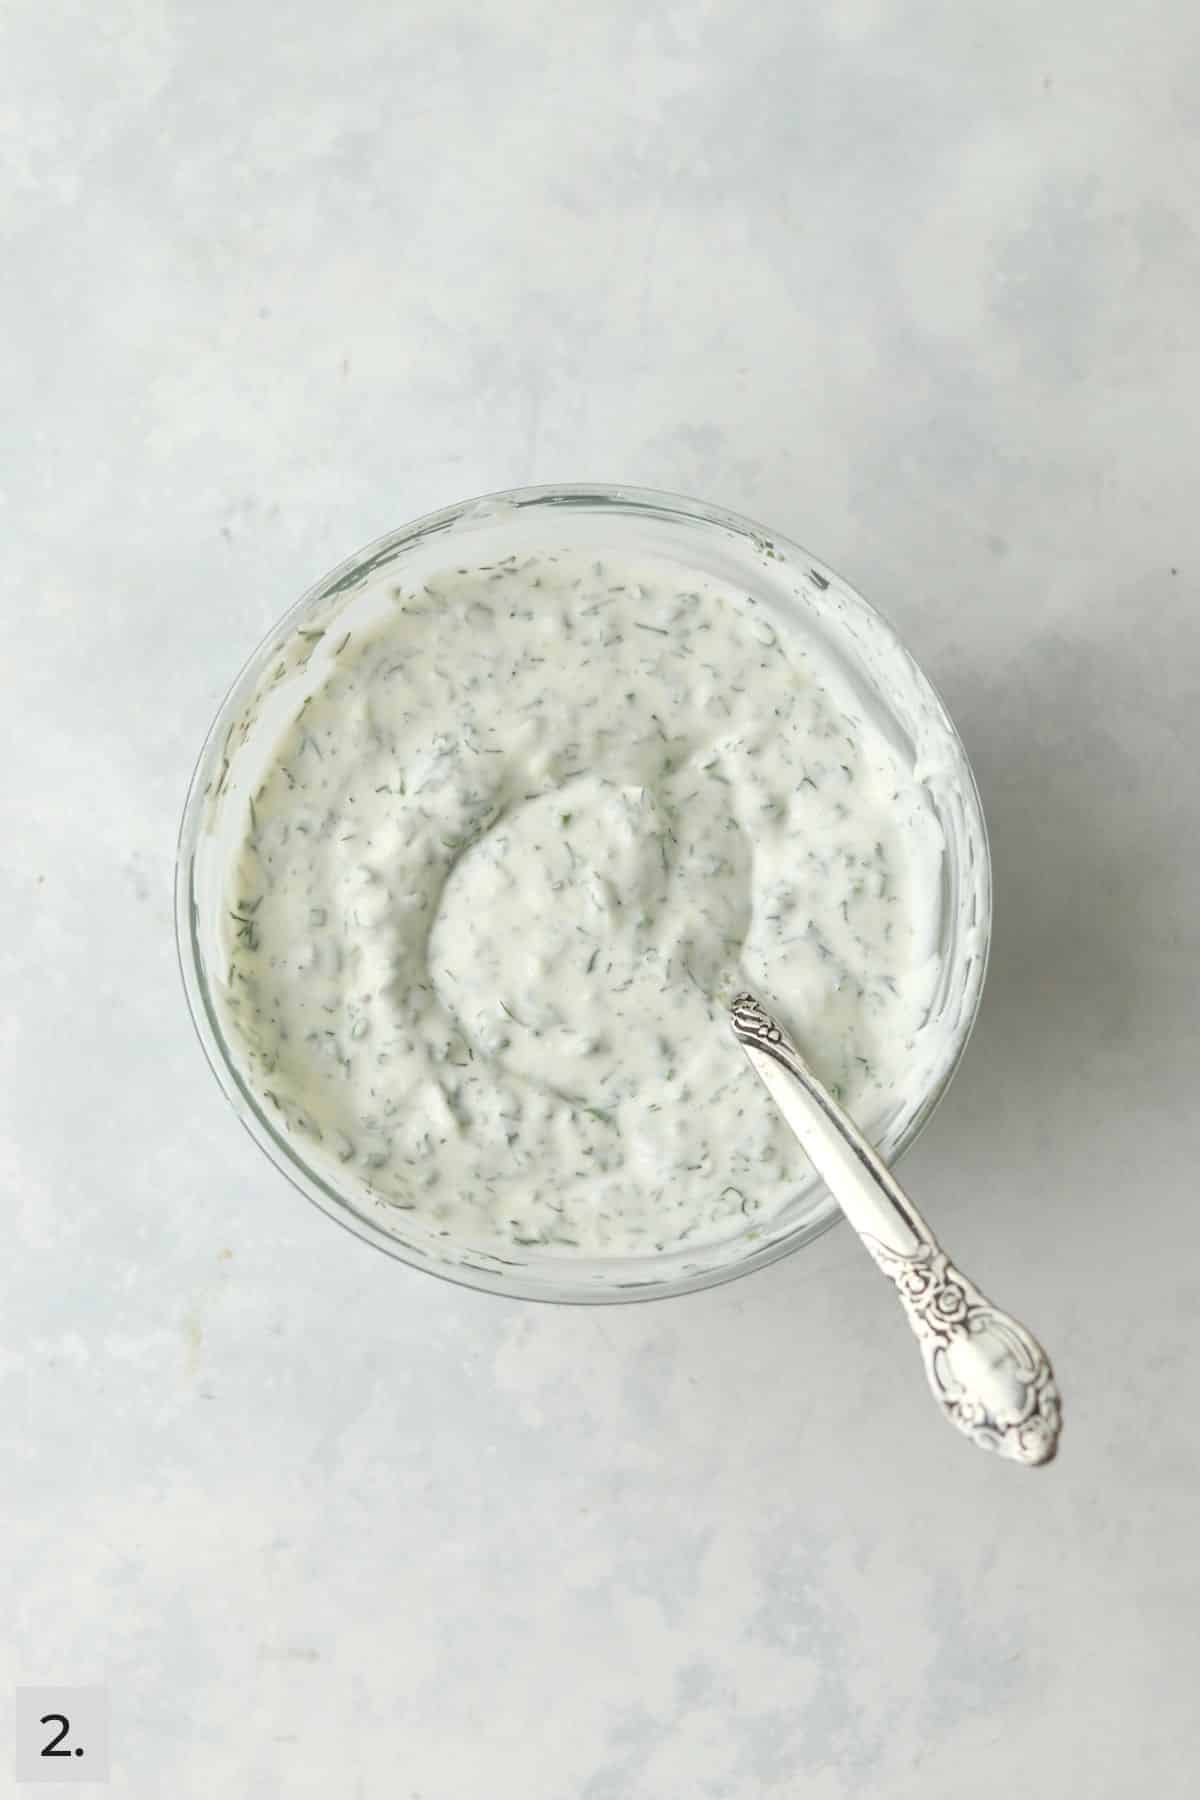 Greek yogurt ranch dressing in a bowl with a spoon.